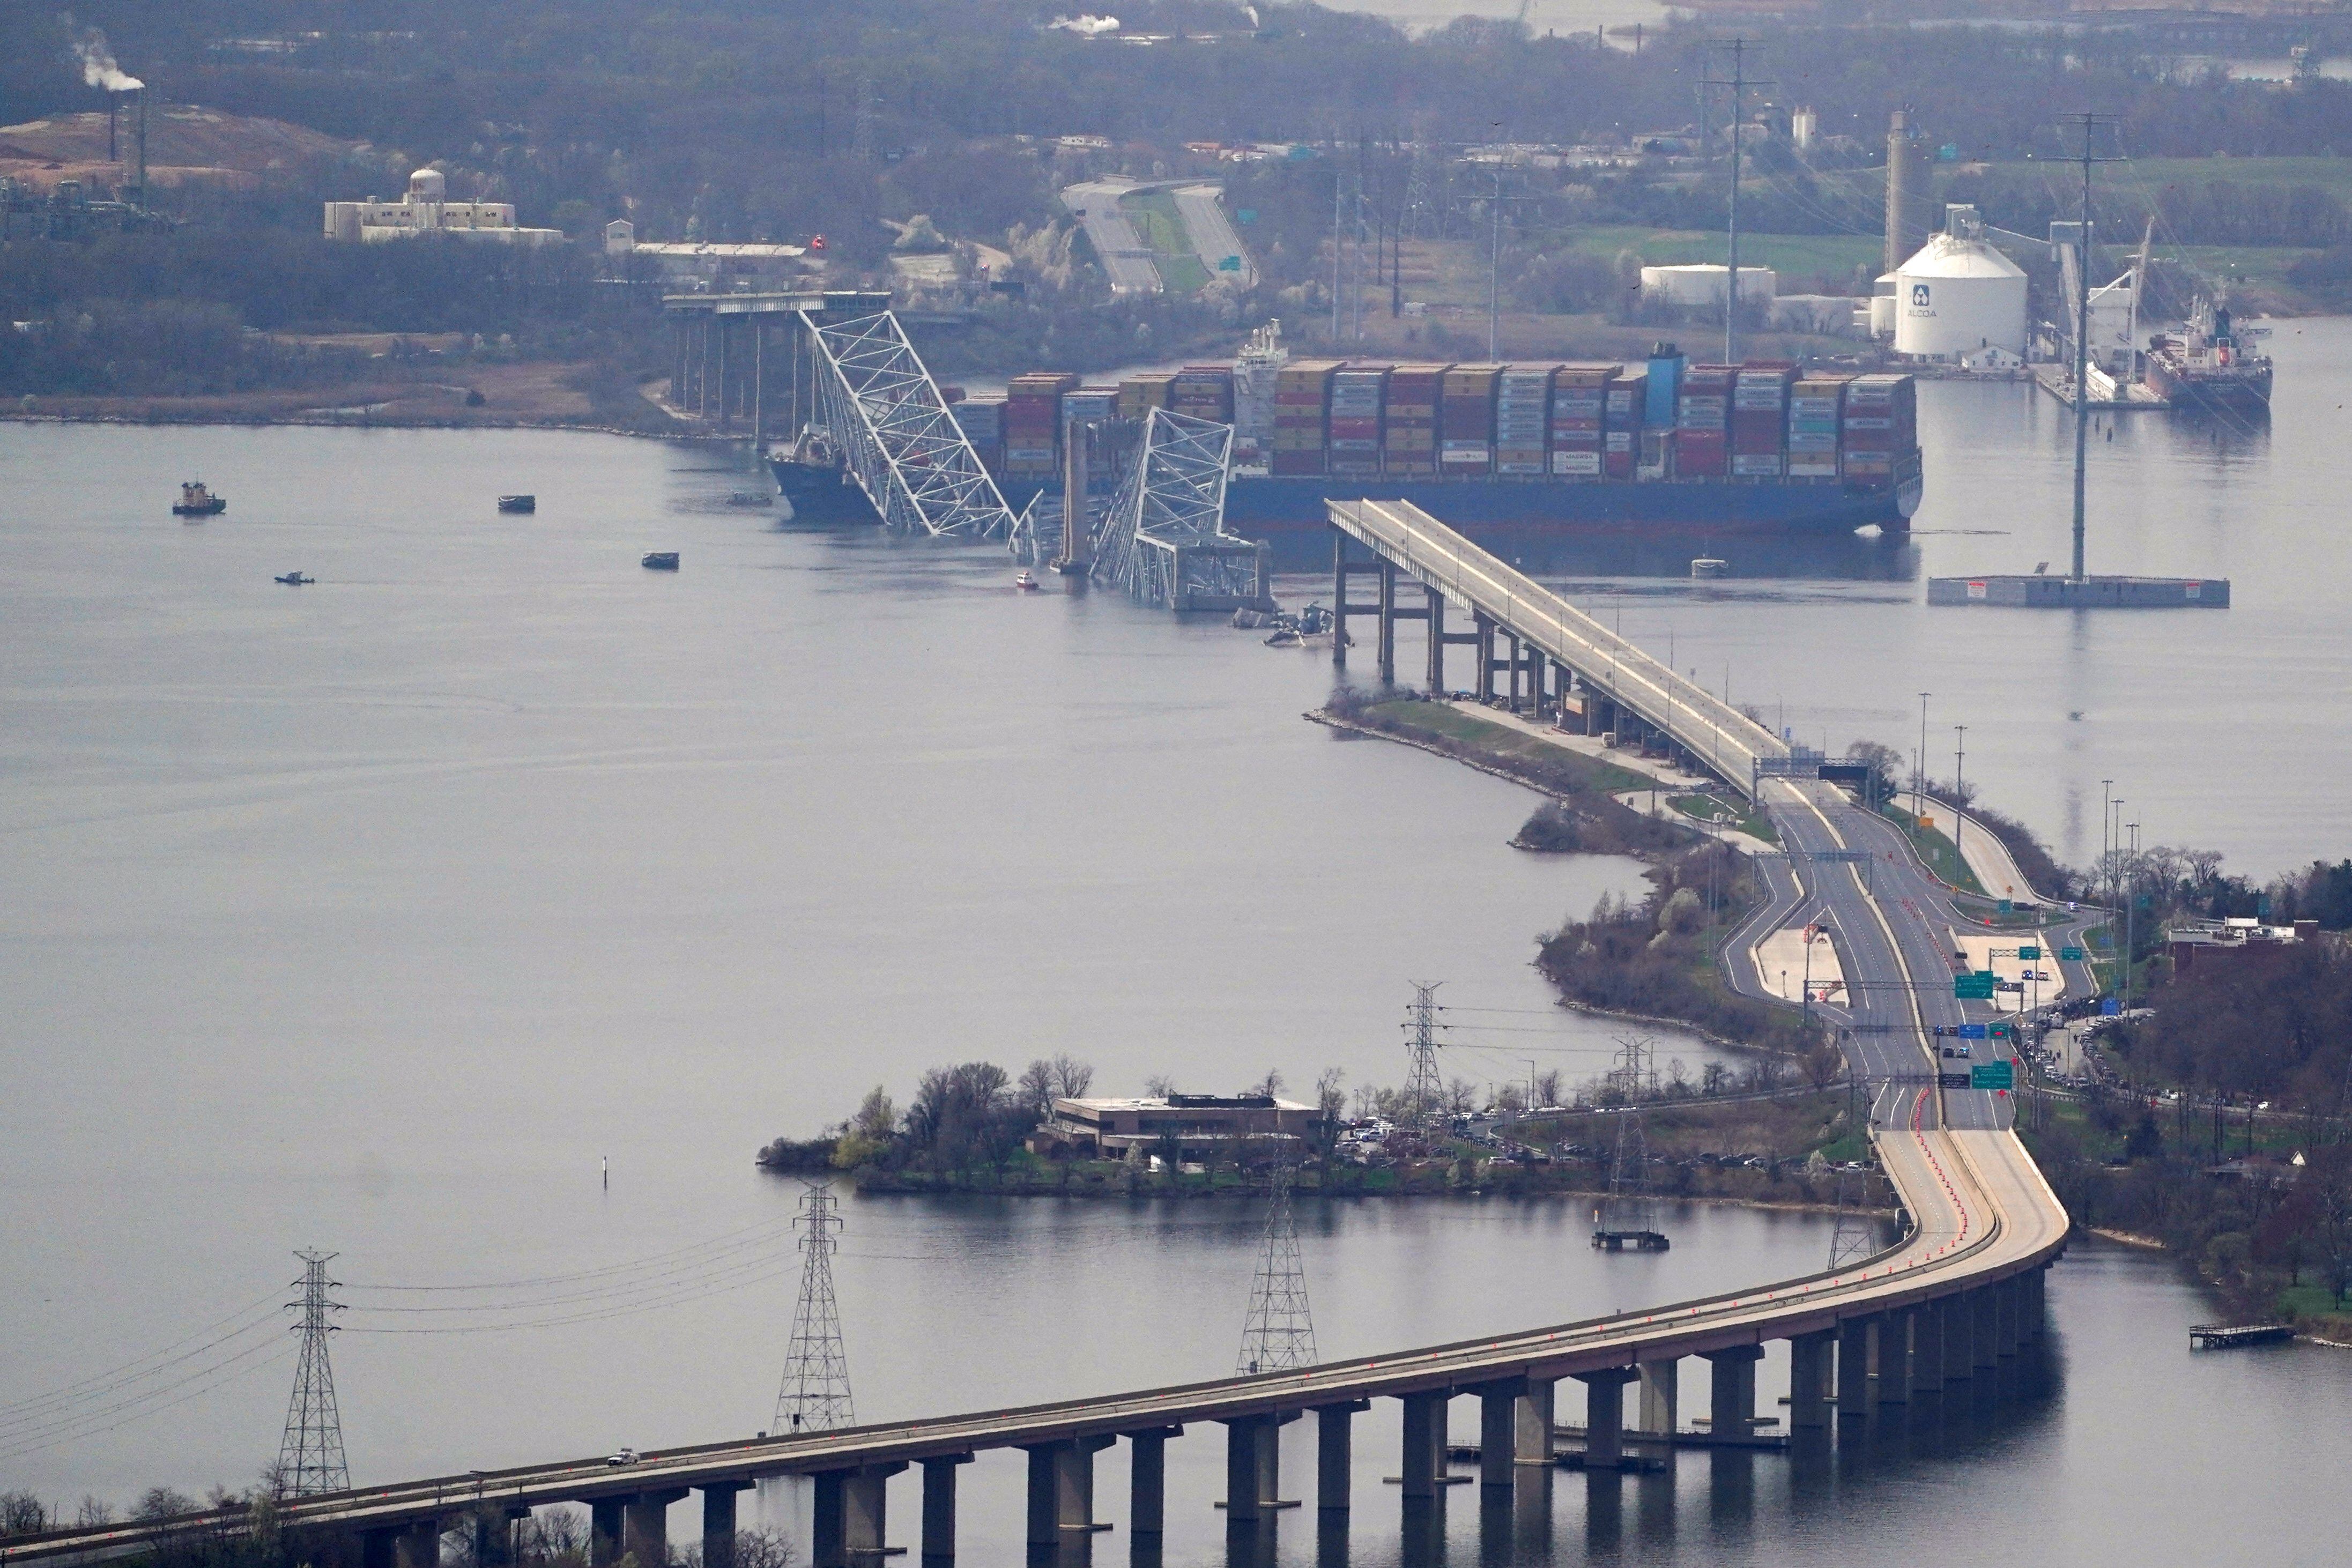 “Un barco acaba de perder el rumbo”: así fue el choque del carguero contra el puente de Baltimore